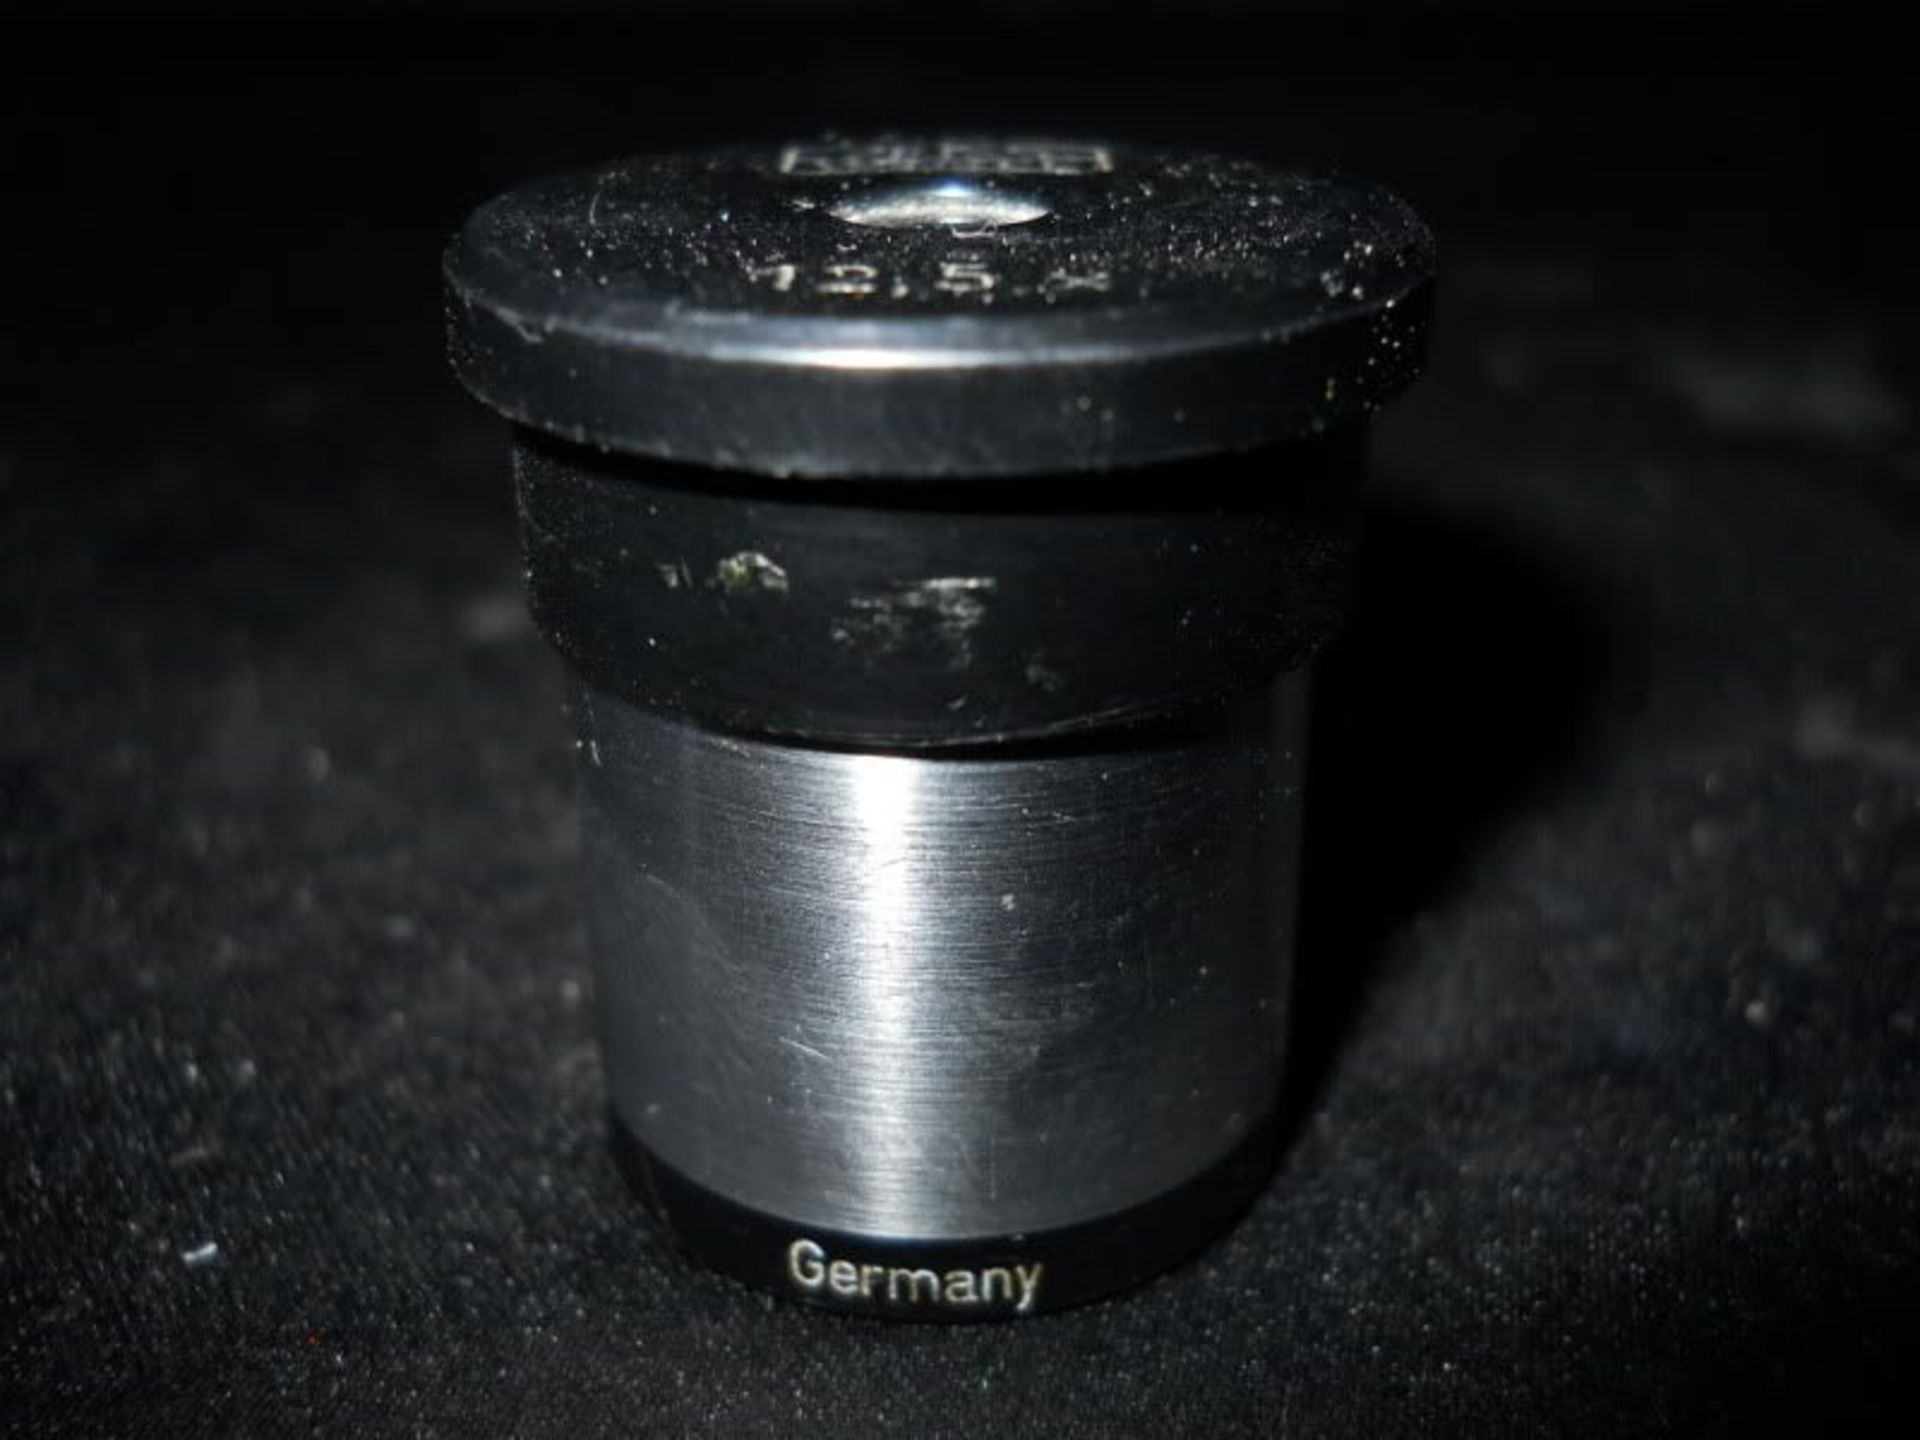 Zeiss Winkel 12.5x Microscope Eyepiece (Ocular) Objective 1.25" Tall, Qty 1, 321018866485 - Image 2 of 3